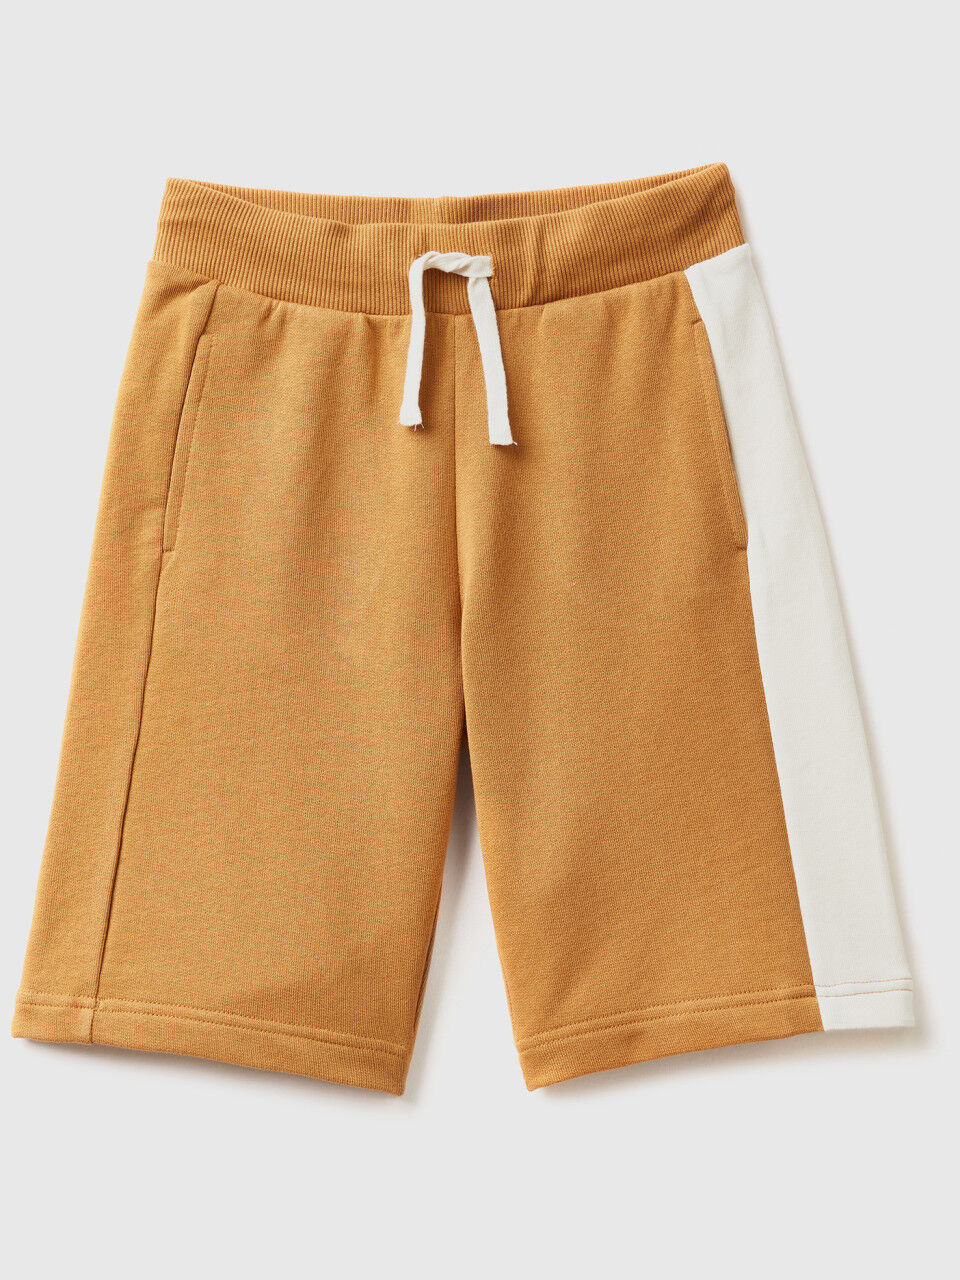 Shorts mit Streifen in einer Kontrastfarbe